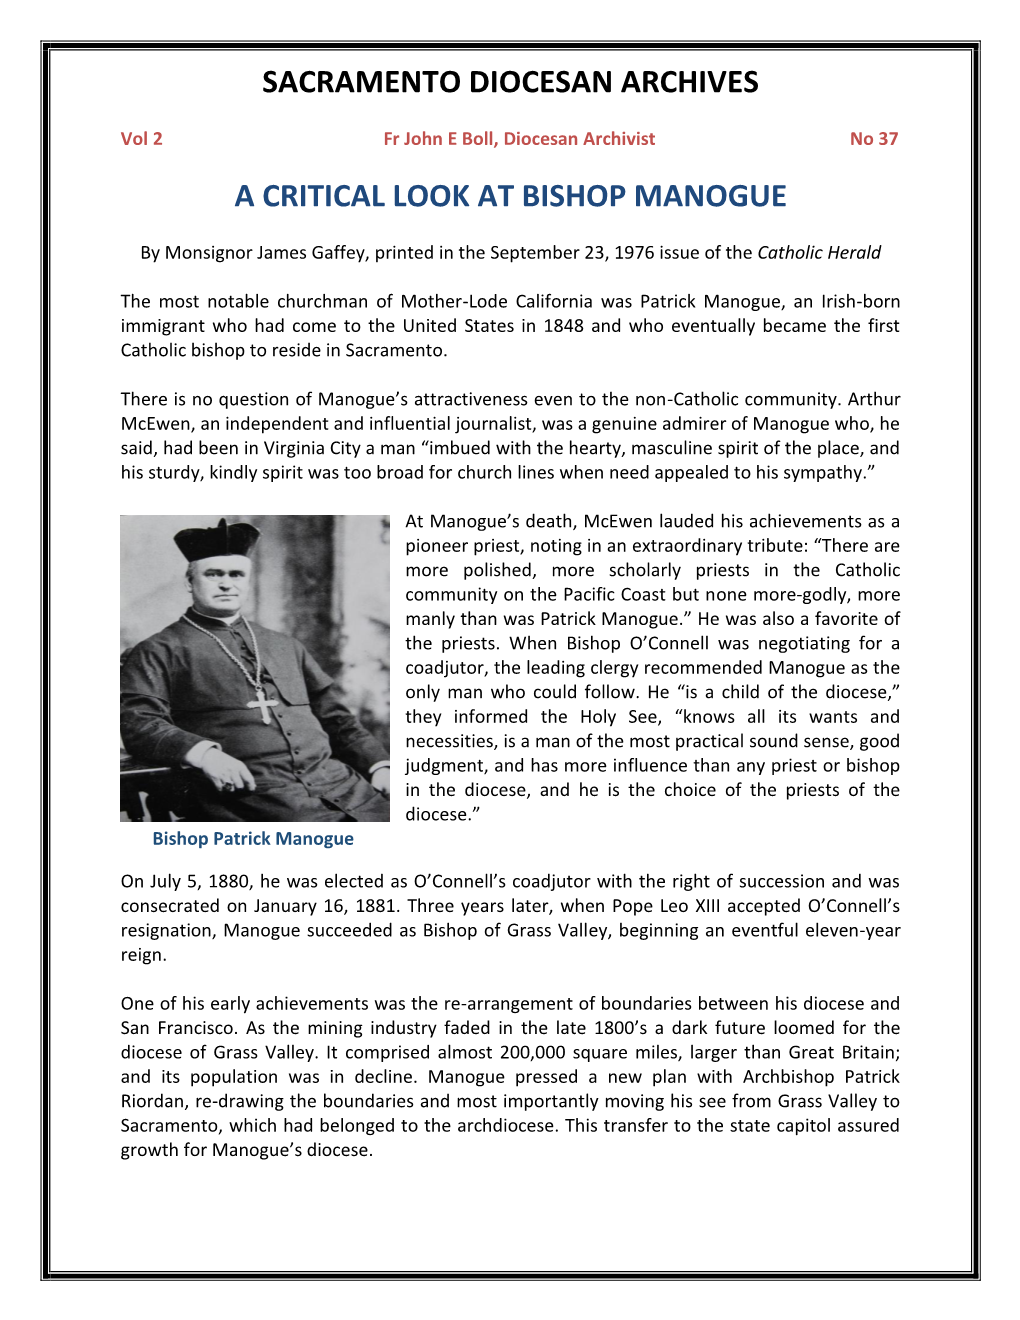 Vol 2, No 37 a Critical Look at Bishop Manogue